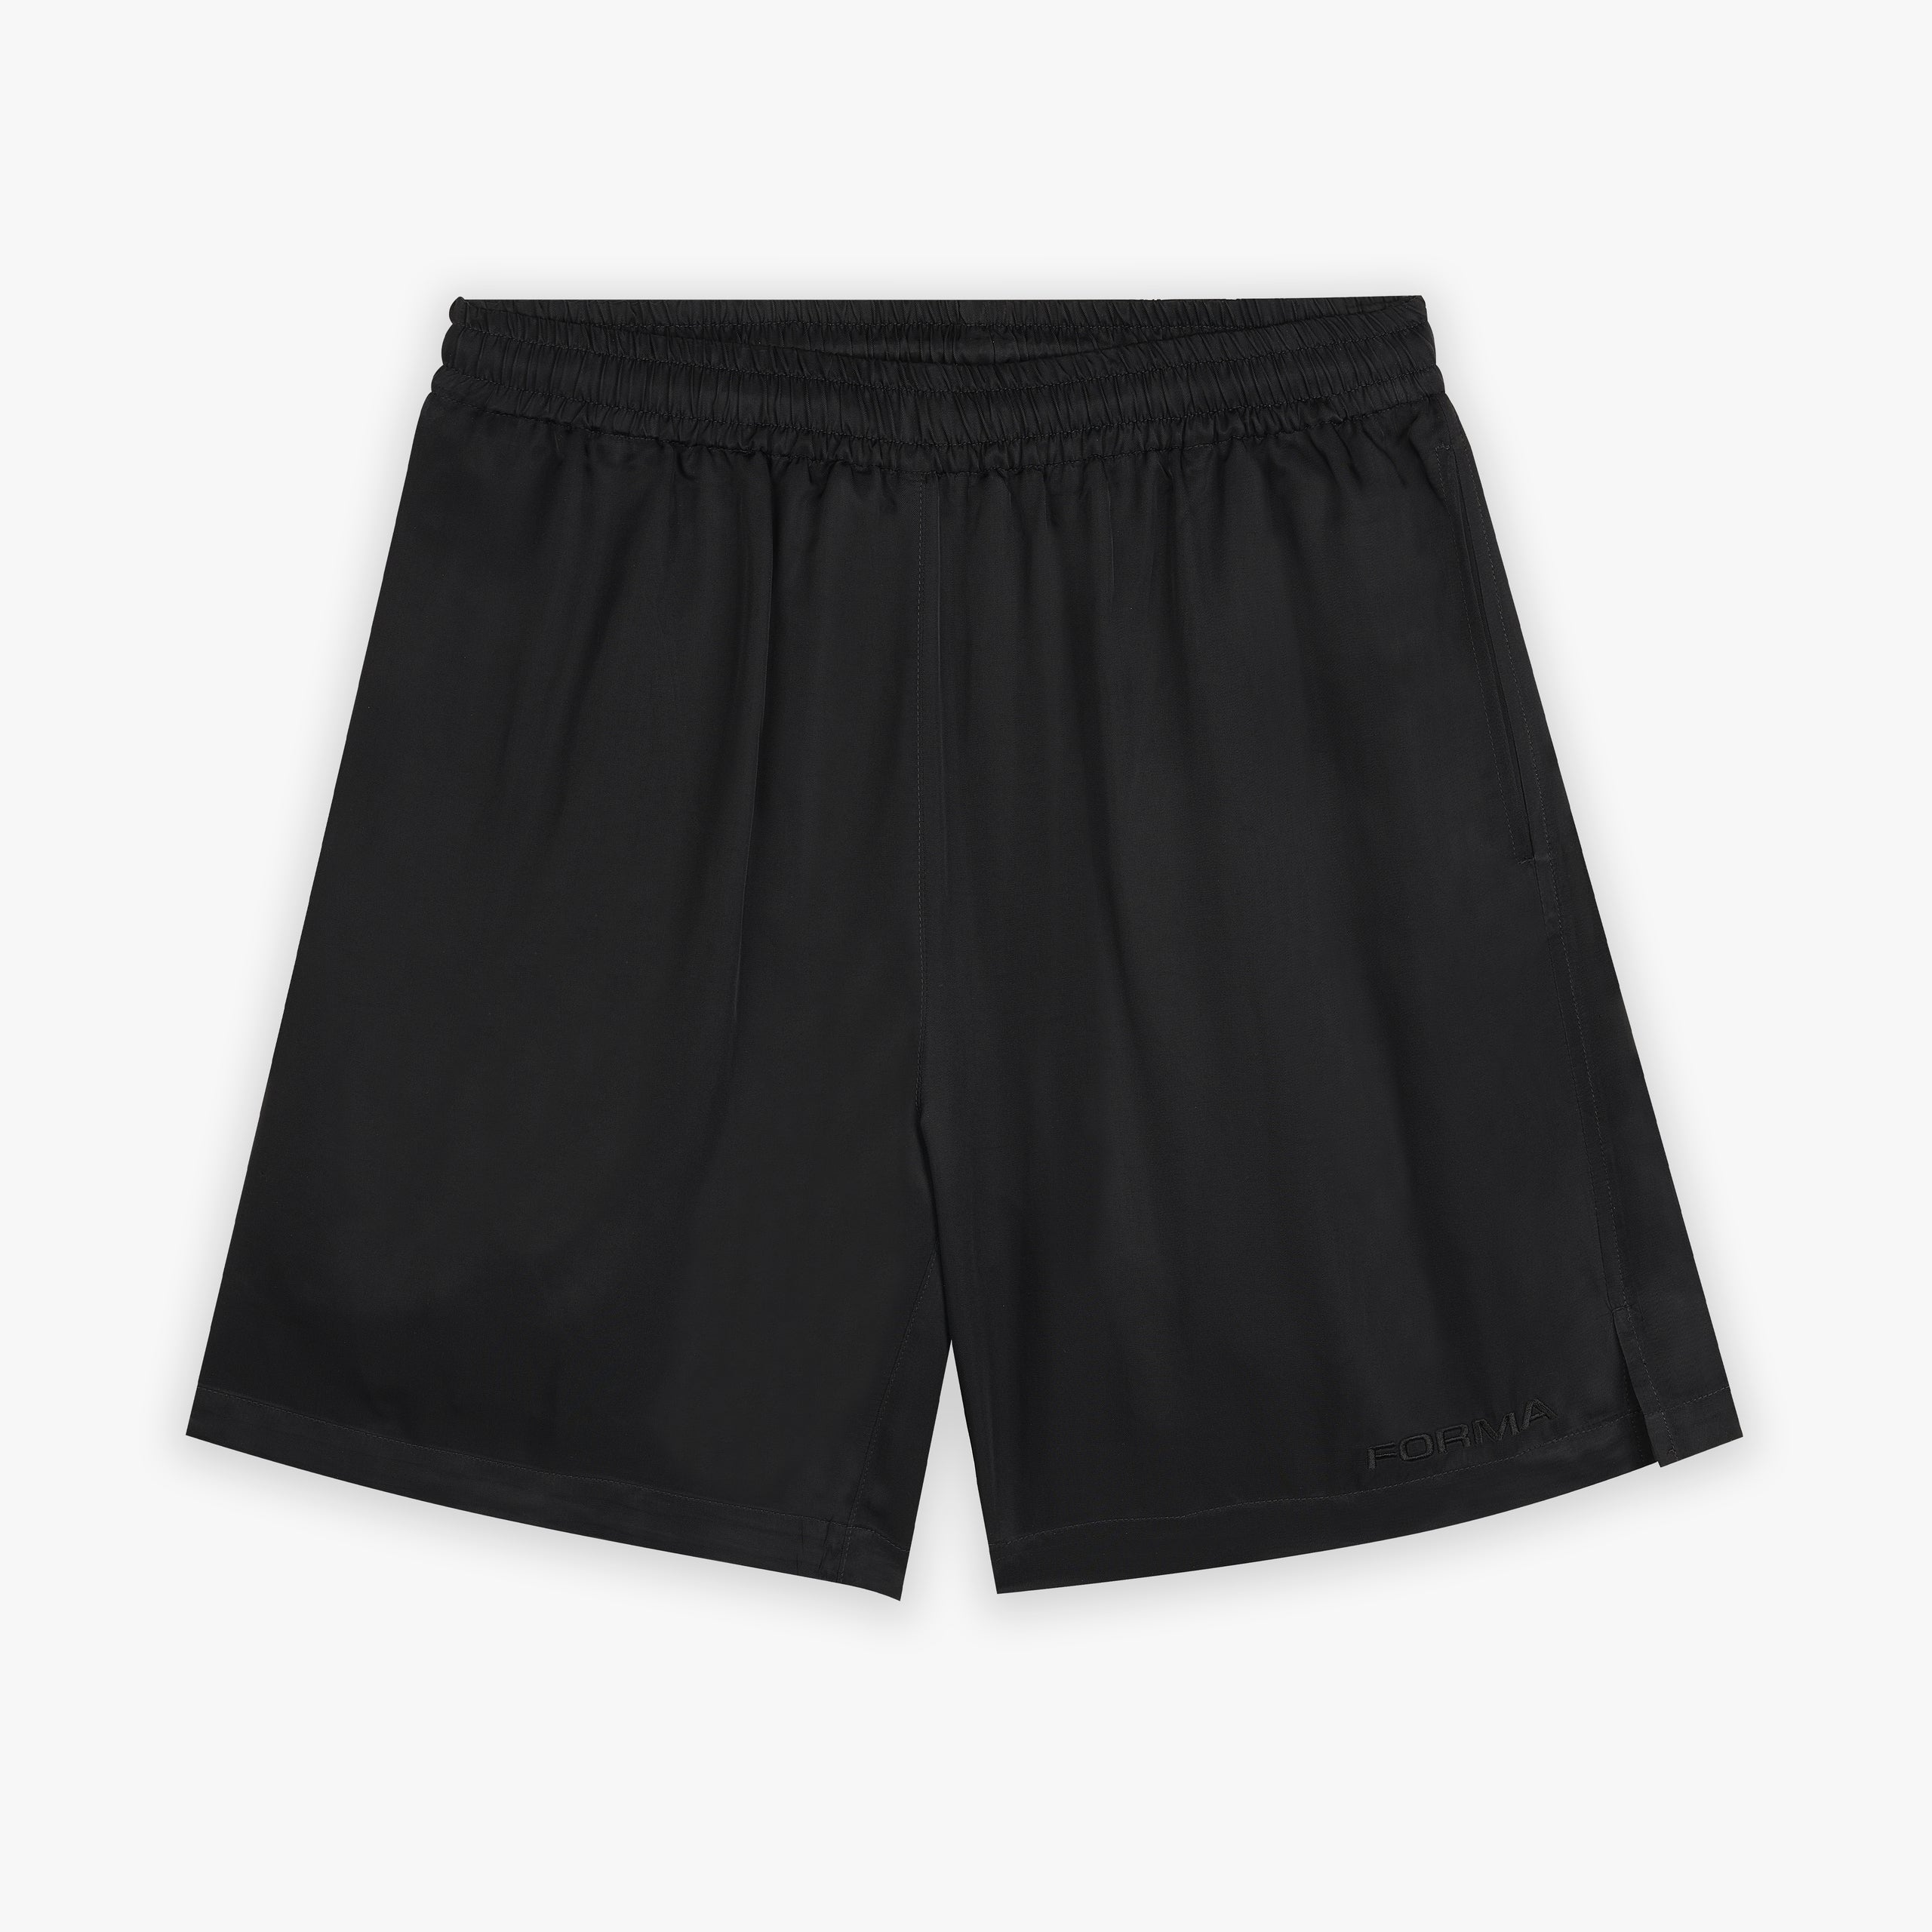 Forma black viscose shorts